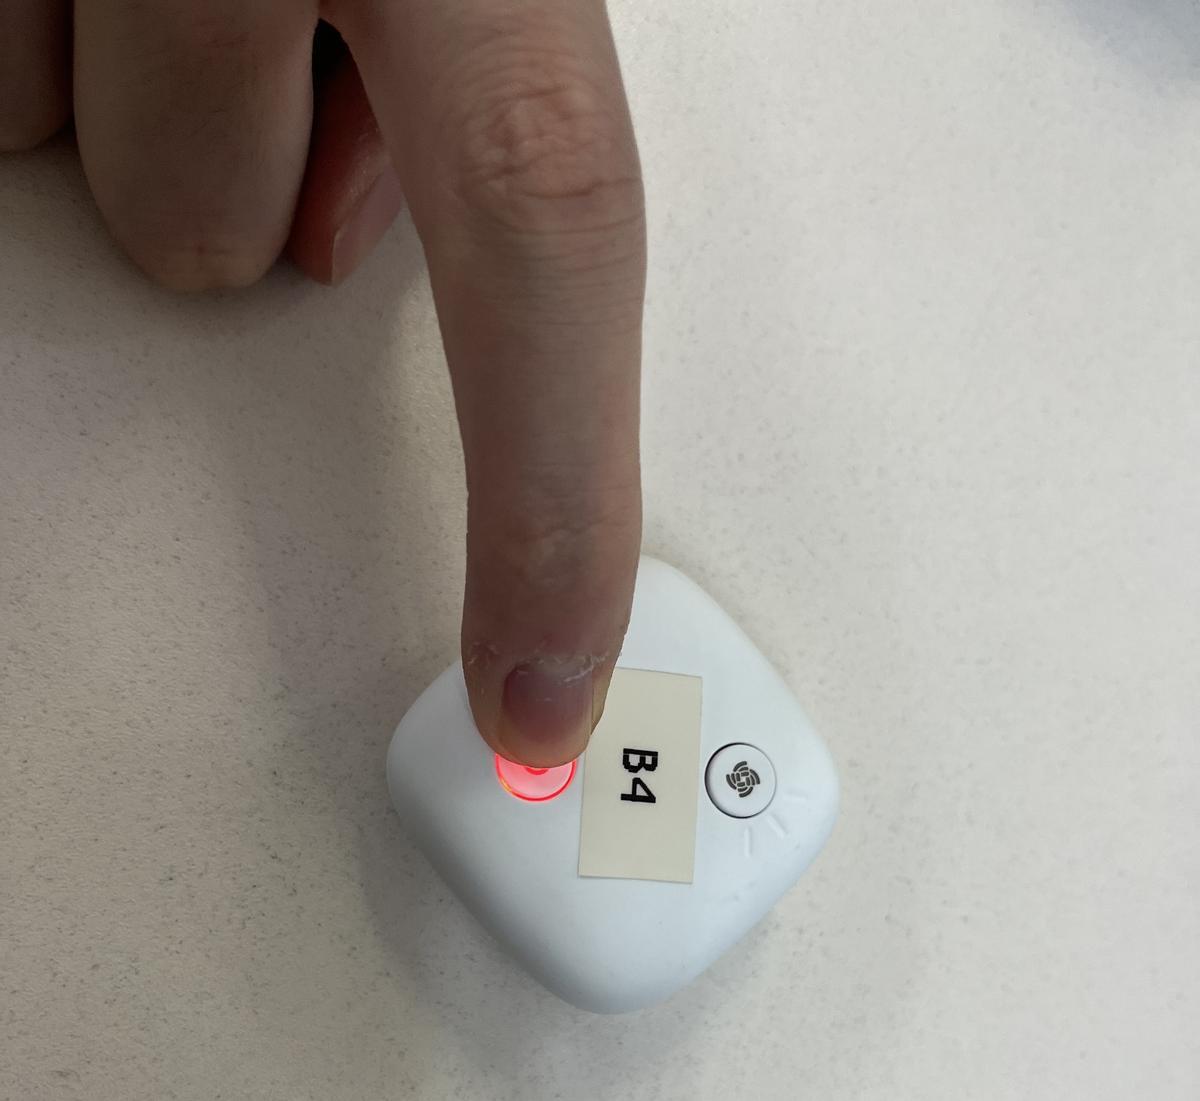 El botón del dispositivo de la red LoRa que permite alertar en caso de emergencia.